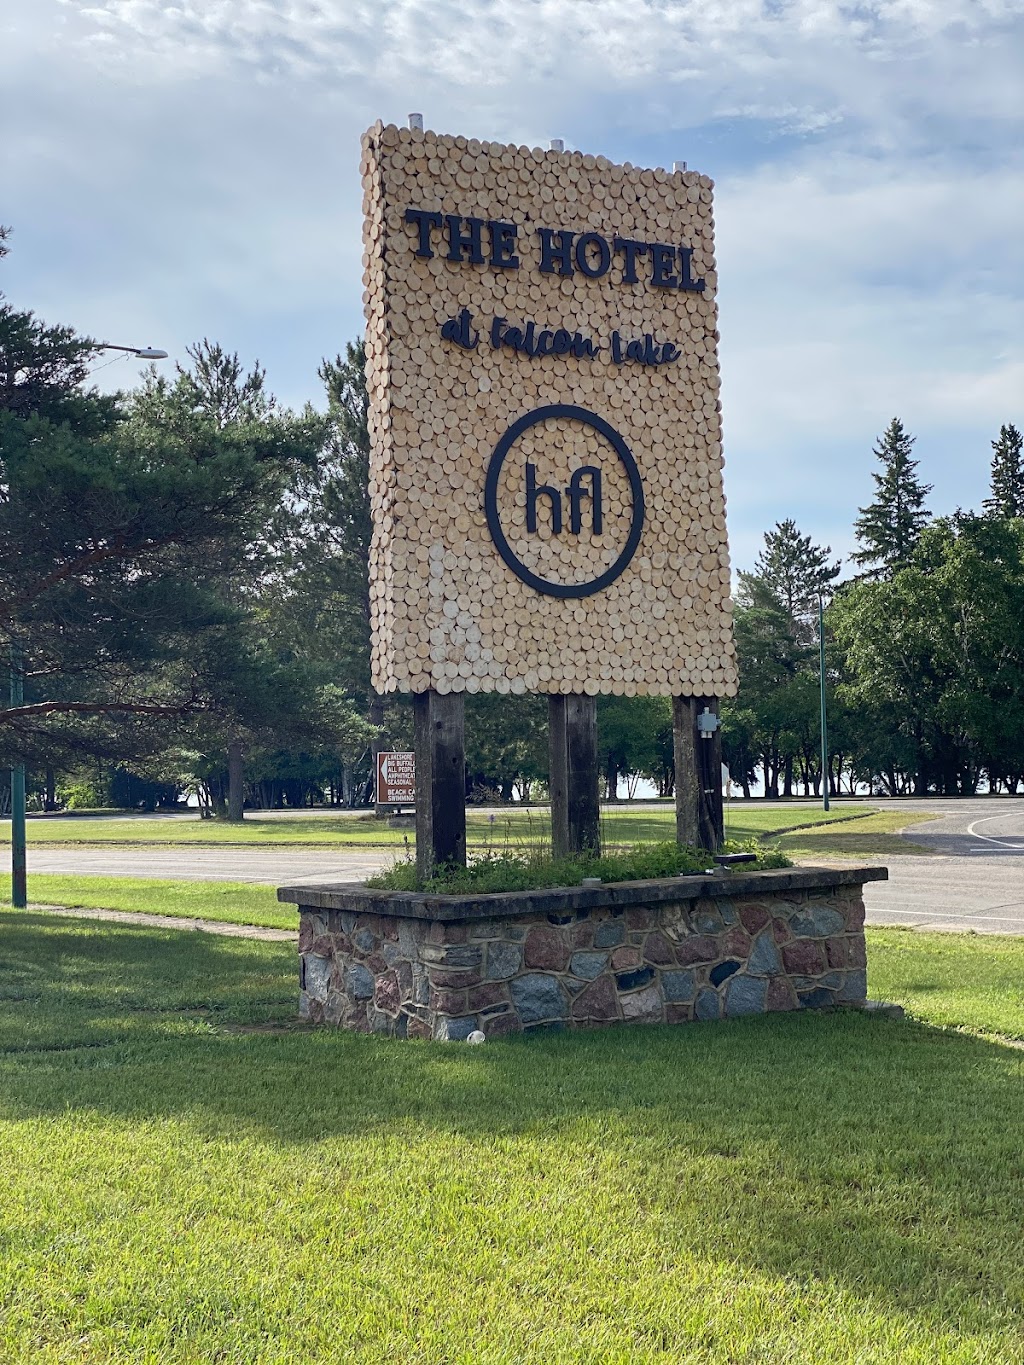 The Hotel at Falcon Lake | lodging | 1 Falcon Blvd, Falcon Beach, MB R0E 0N0, Canada | 2043498400 OR +1 204-349-8400